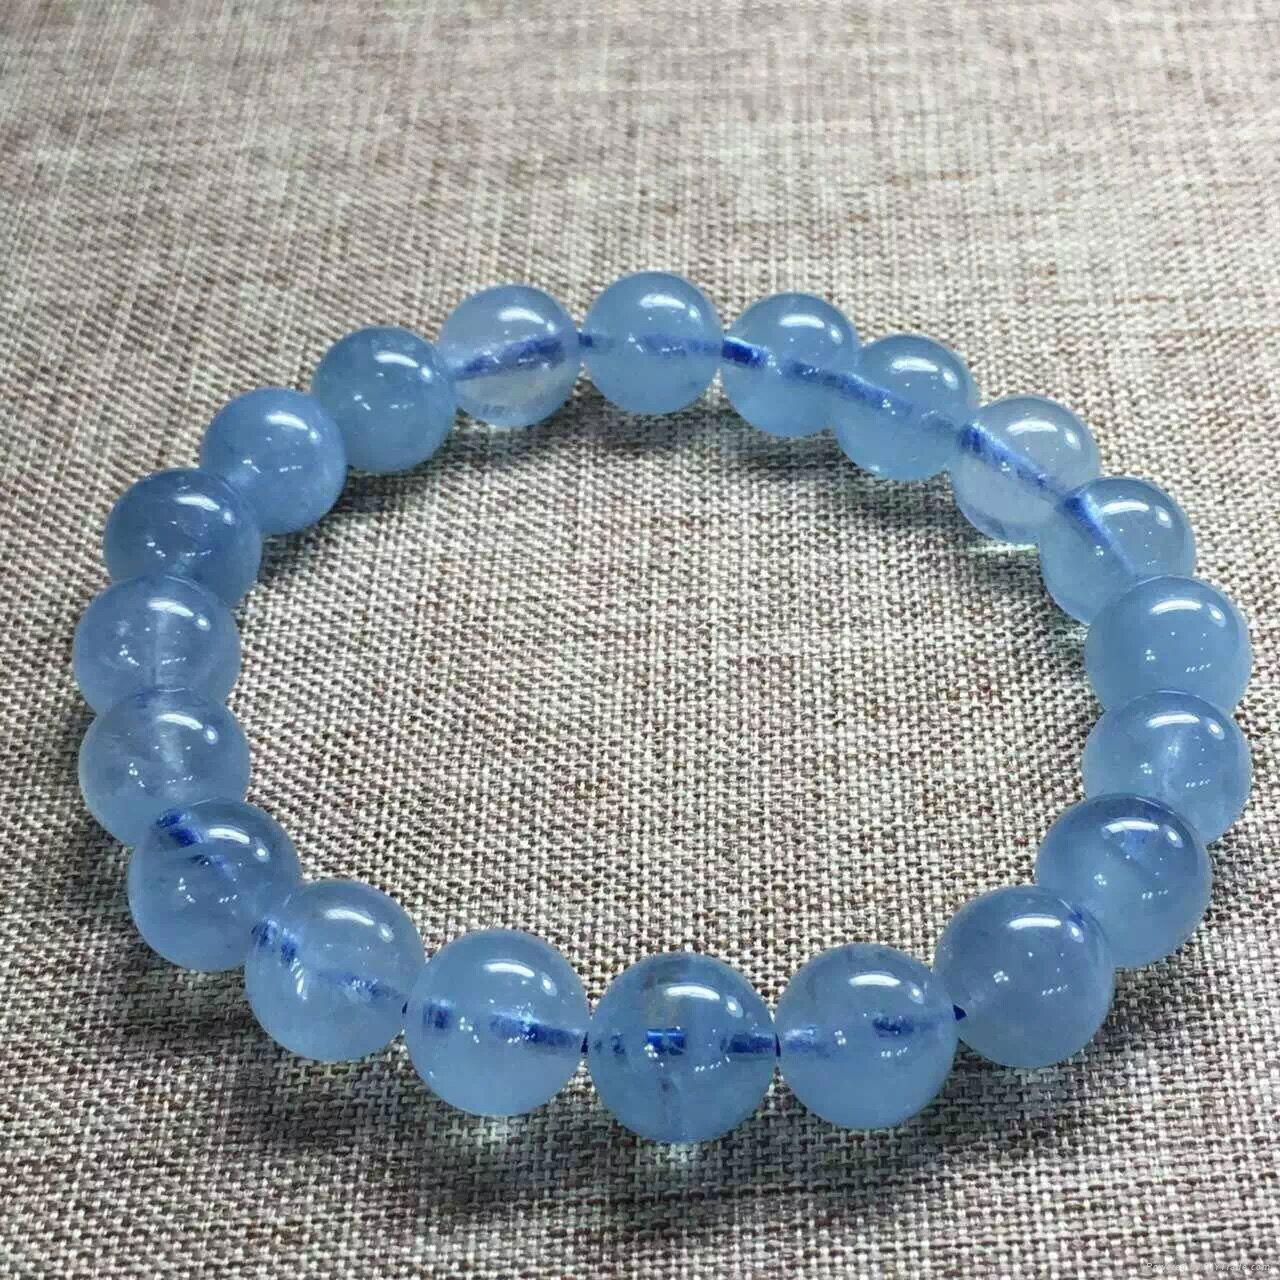 Perfect aquamarine bracelet